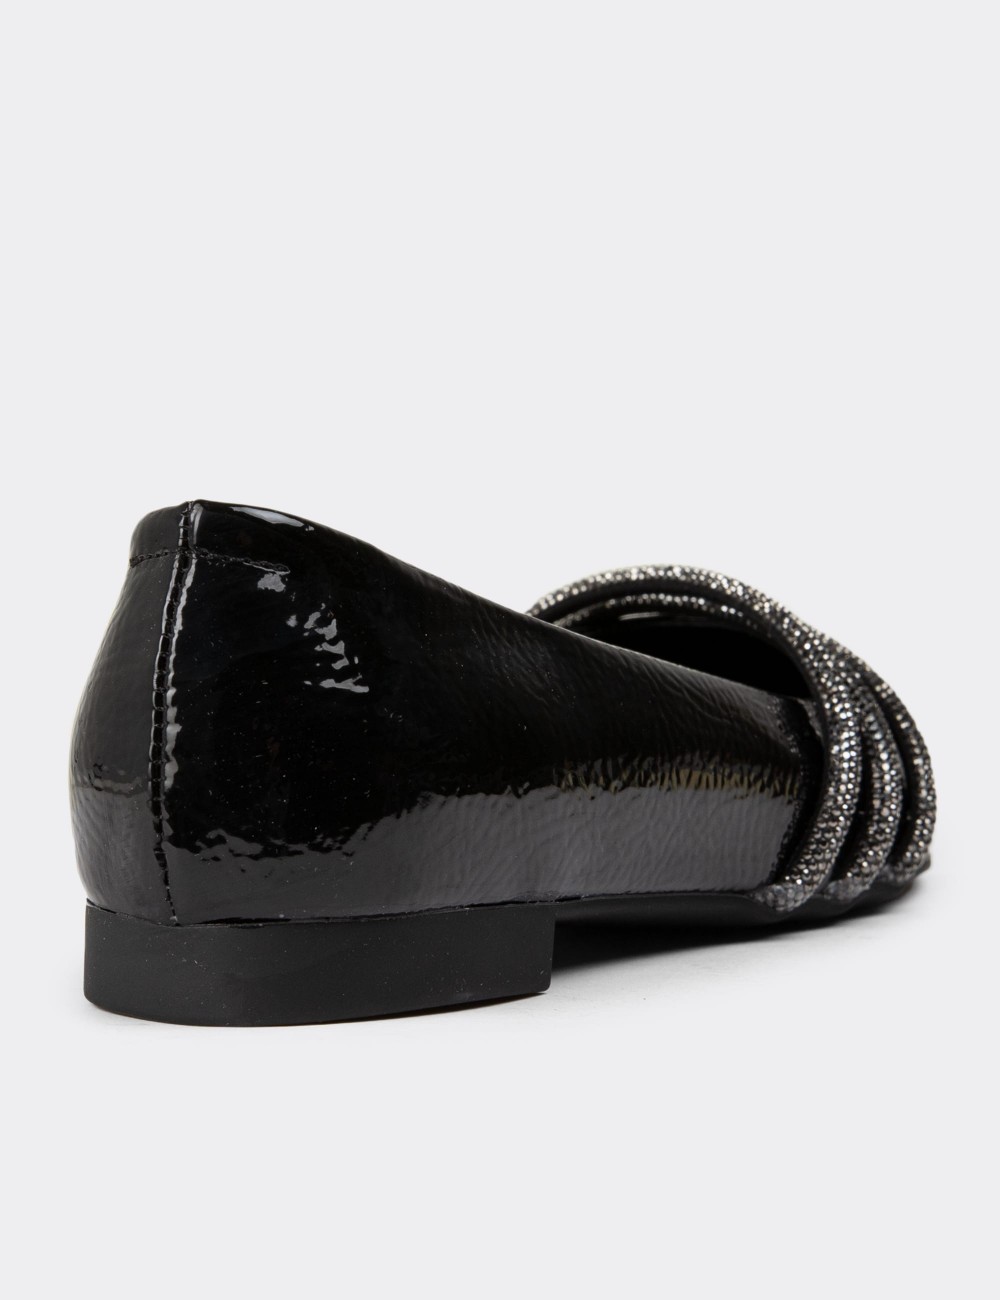 Black Patent Loafers - 38601ZSYHC01